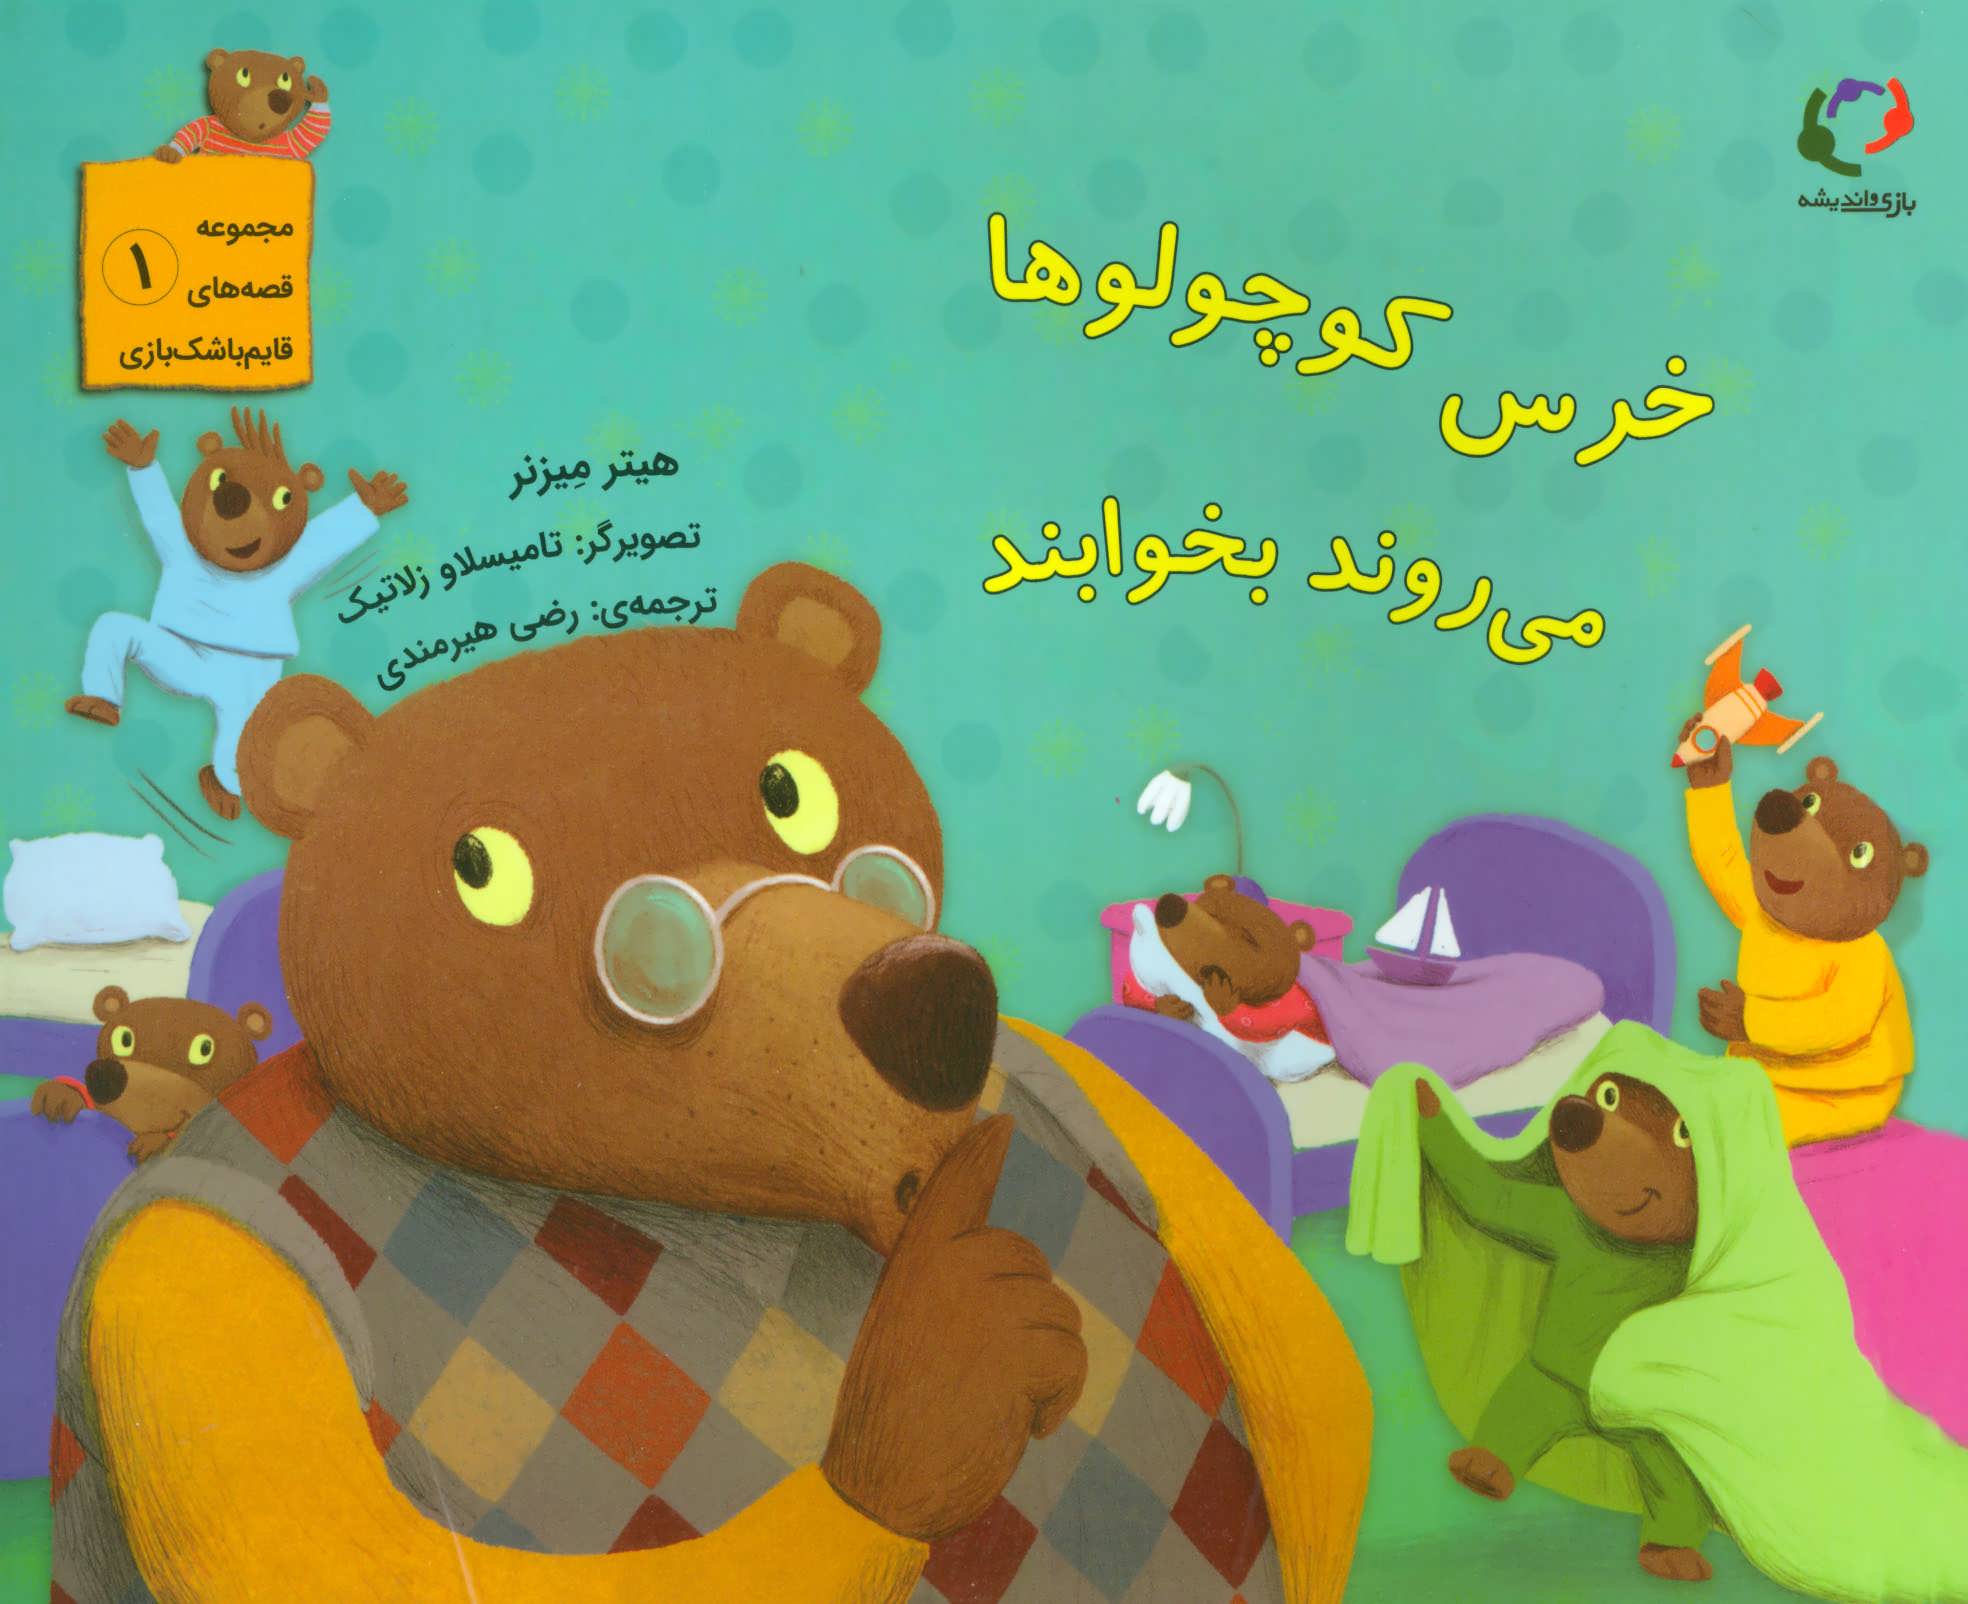  کتاب خرس کوچولوها می روند بخوابند